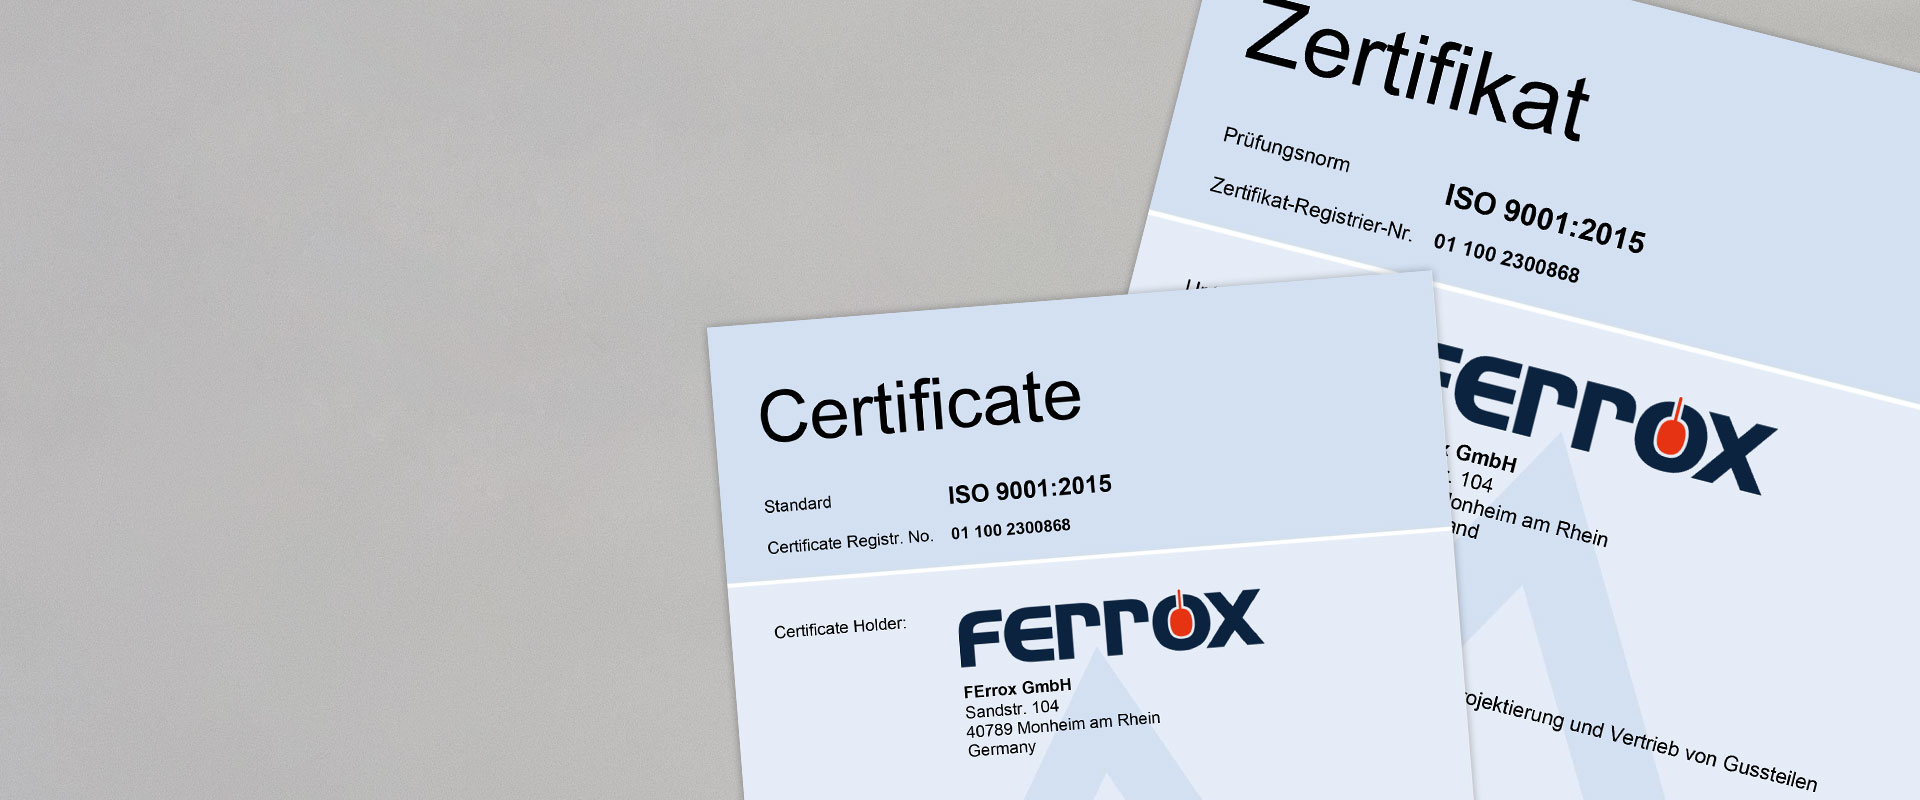 Abbildung der DIN ISO 9001:2015 Zertifikate.- FErrox GmbH